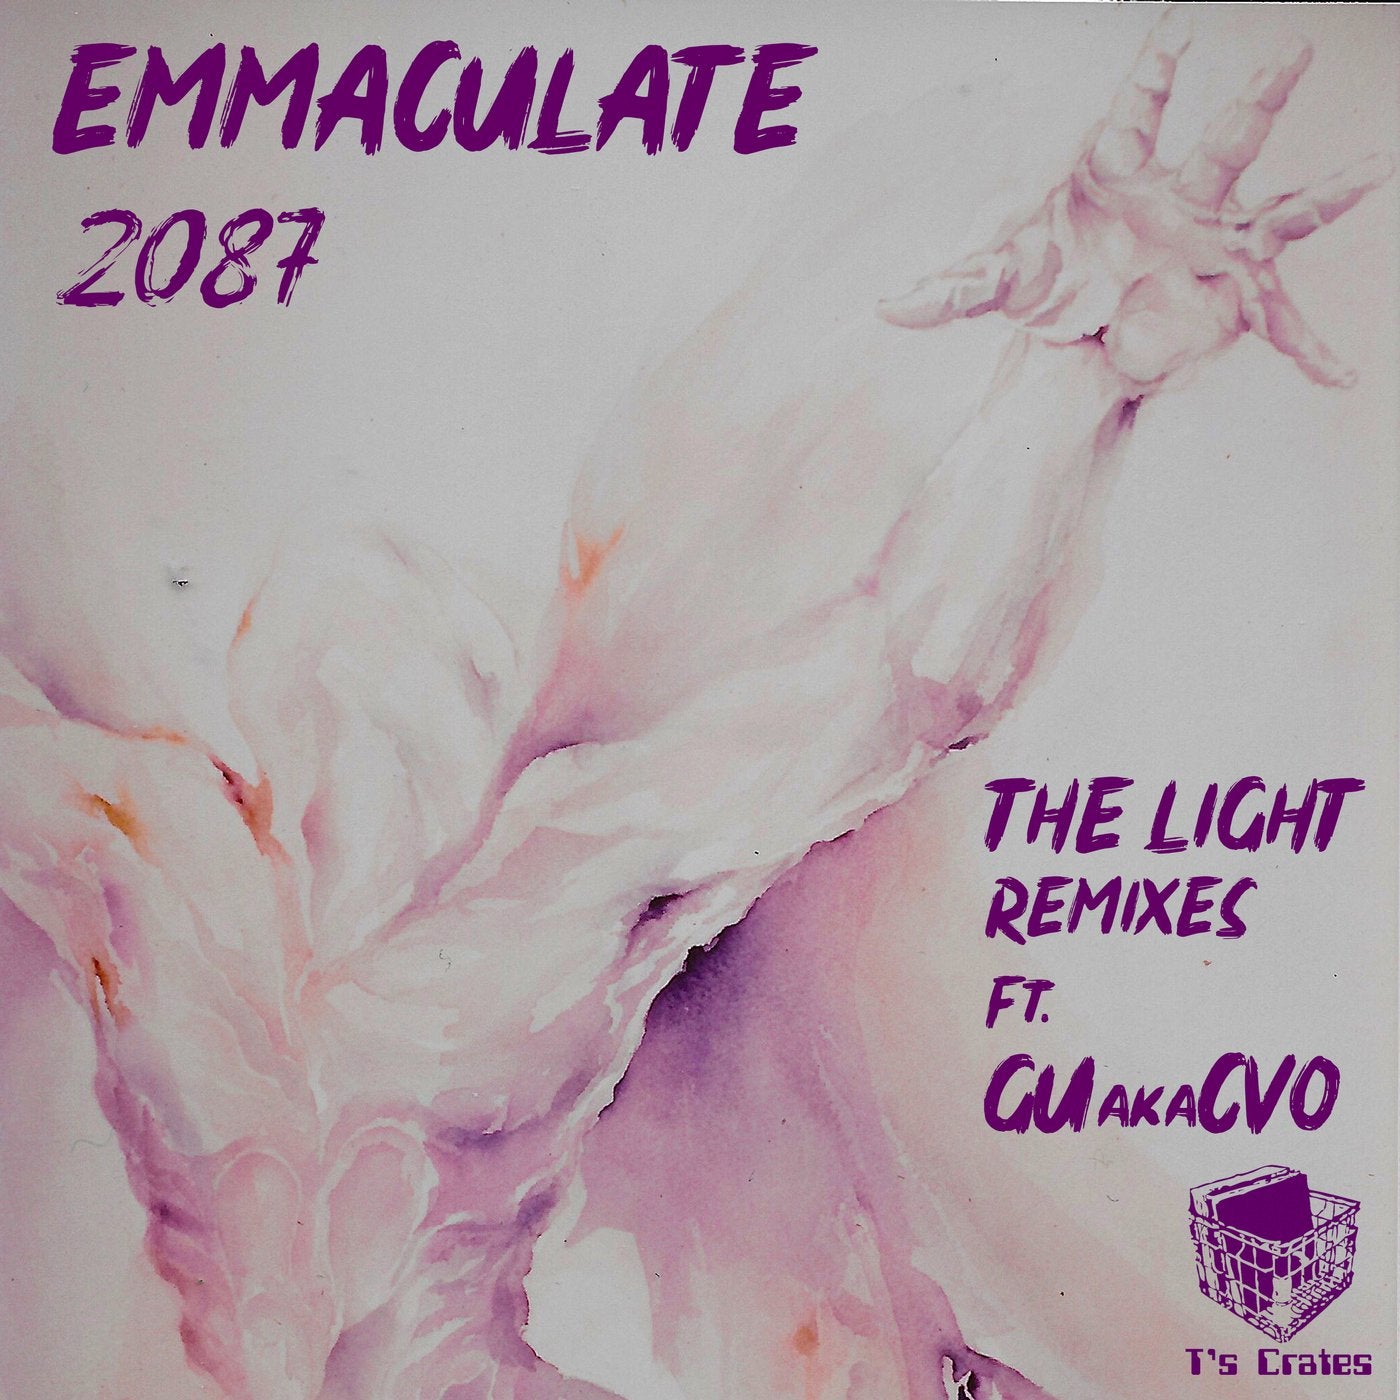 2087 - "The Light Remixes" (Incl. GUakaCVO Mix)